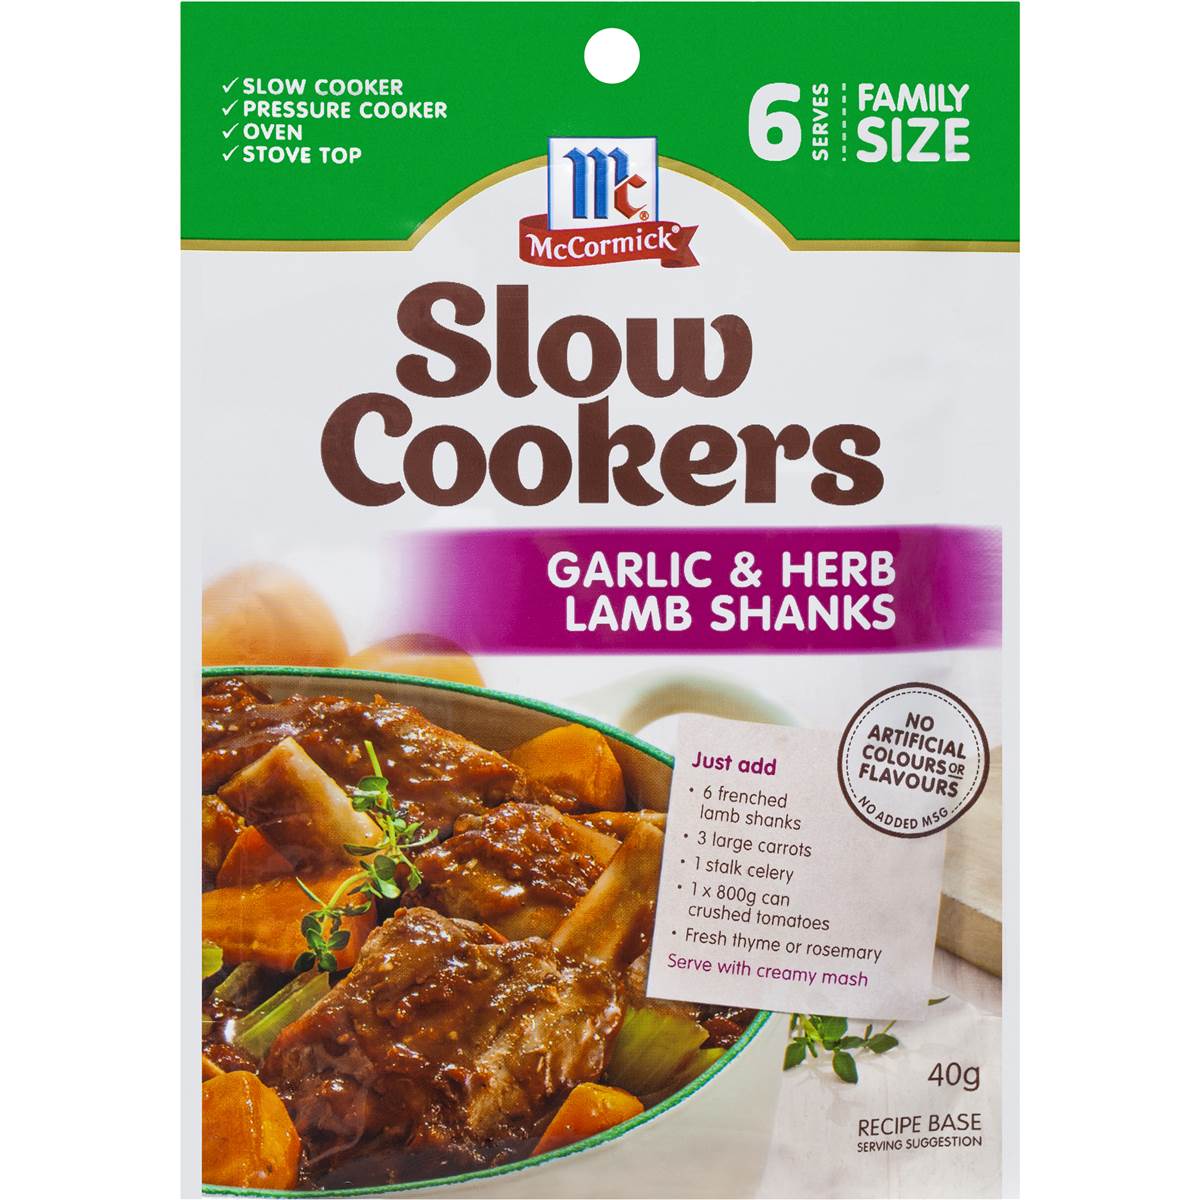 Mccormick Slow Cookers Garlic & Herb Lamb Shanks